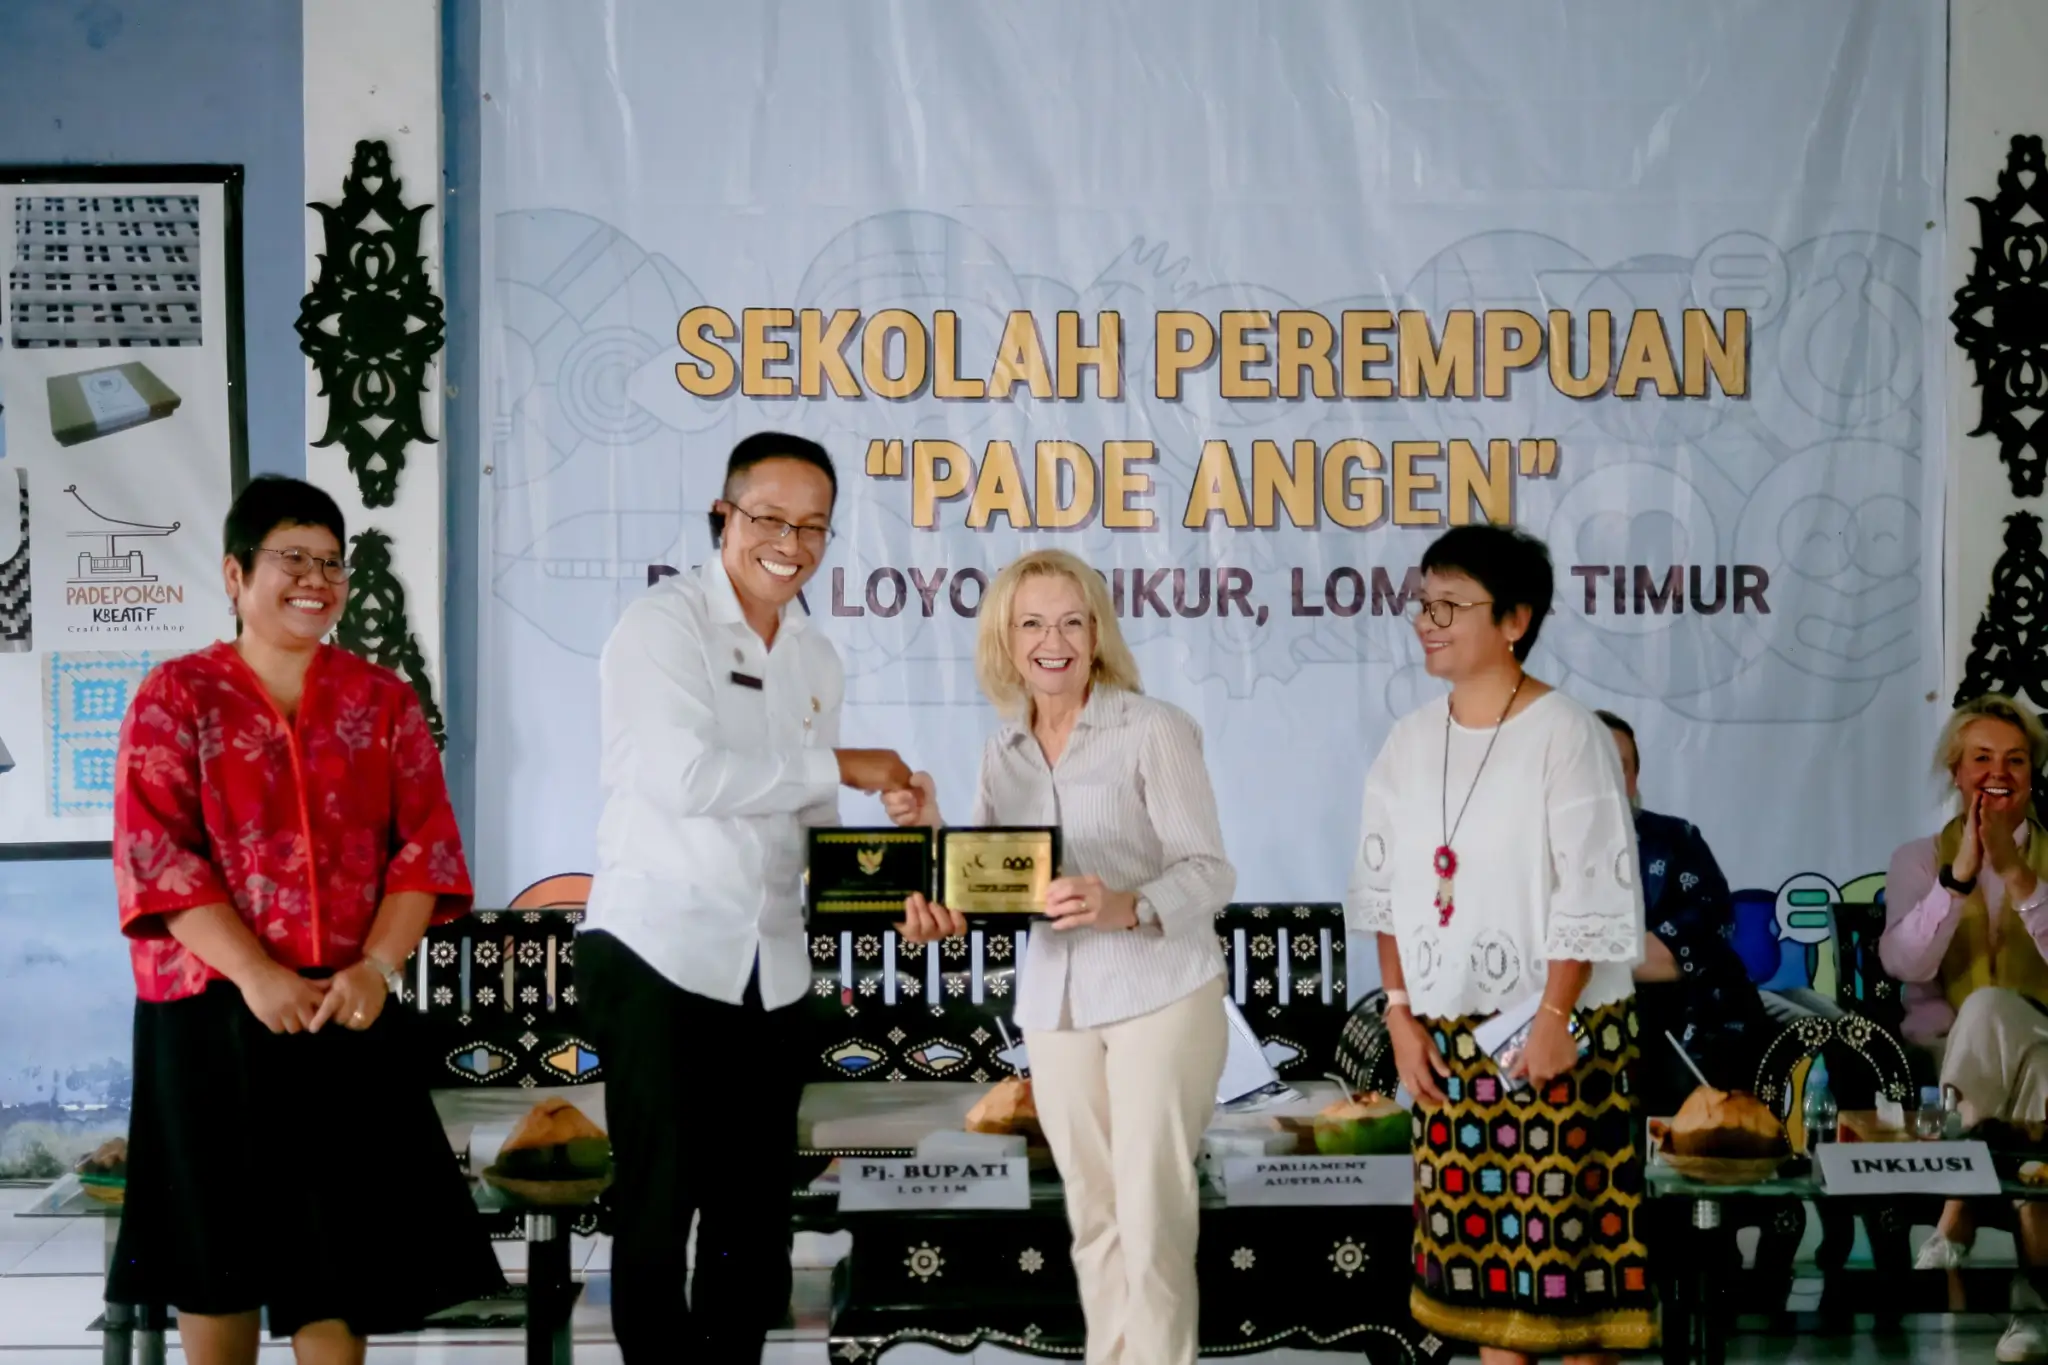 Australian Parliamentarians Visit INKLUSI Program in East Lombok - Sekolah Pada Angen